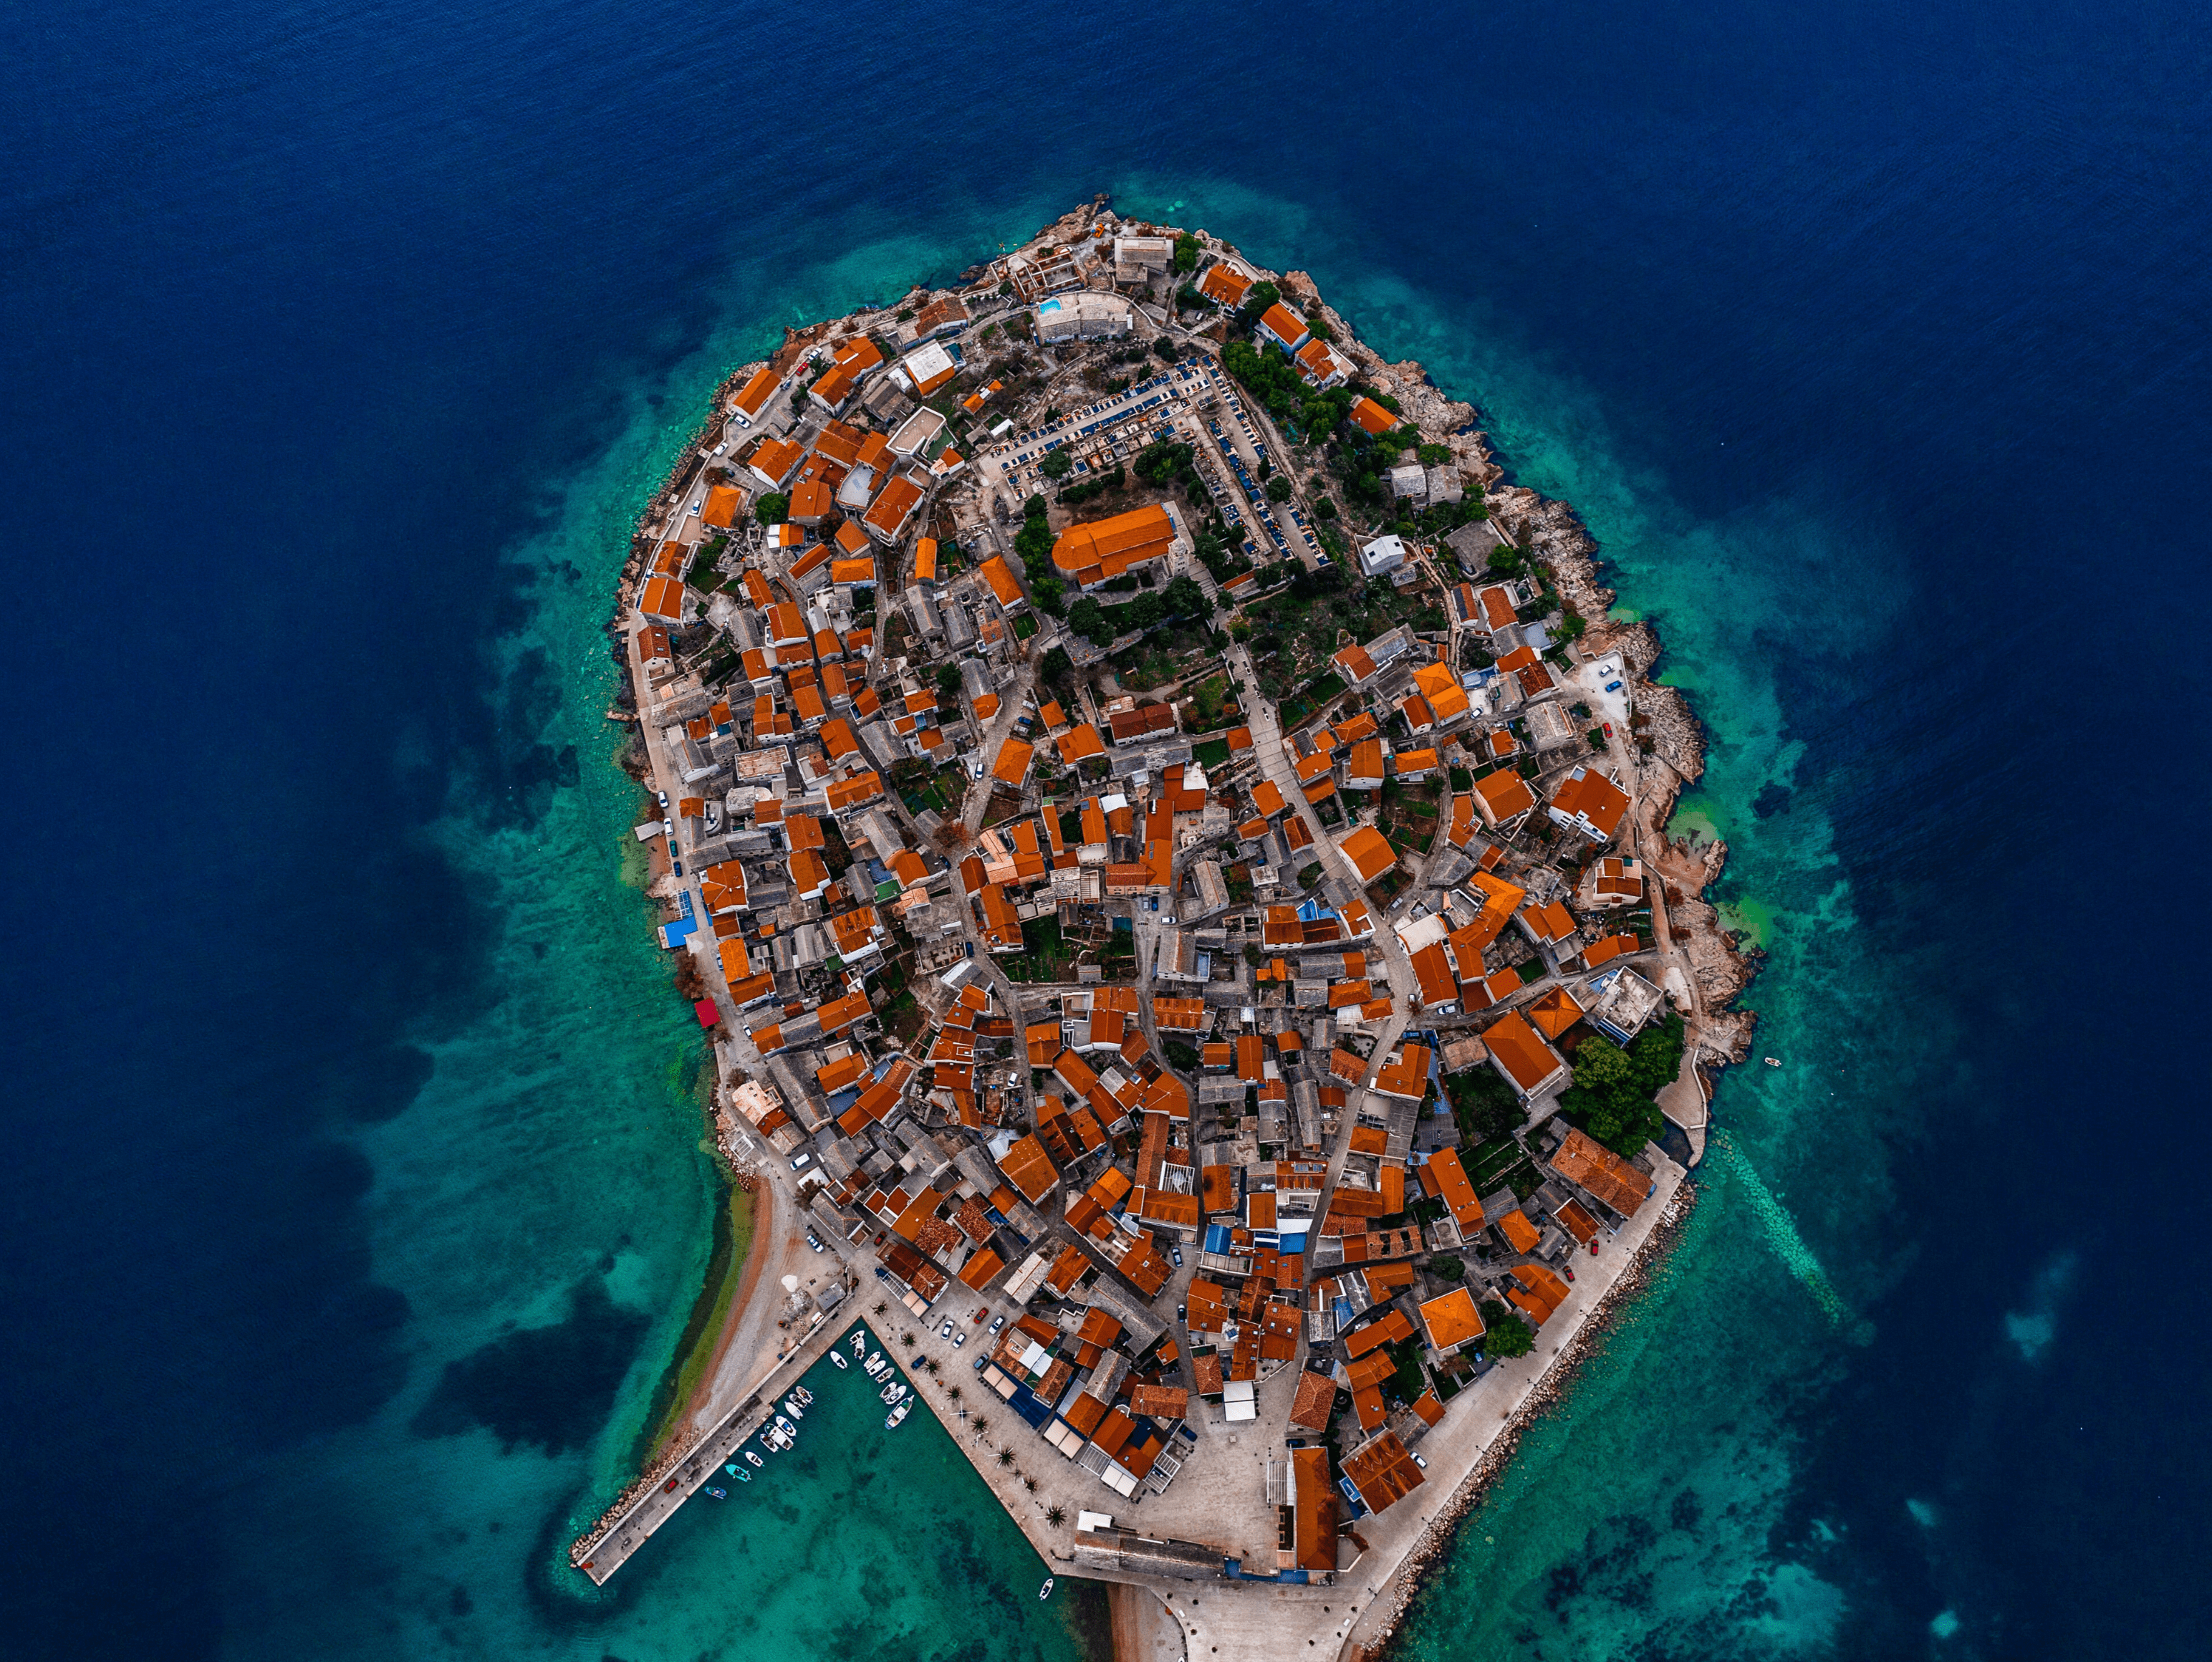 Top view of Croatian Islands